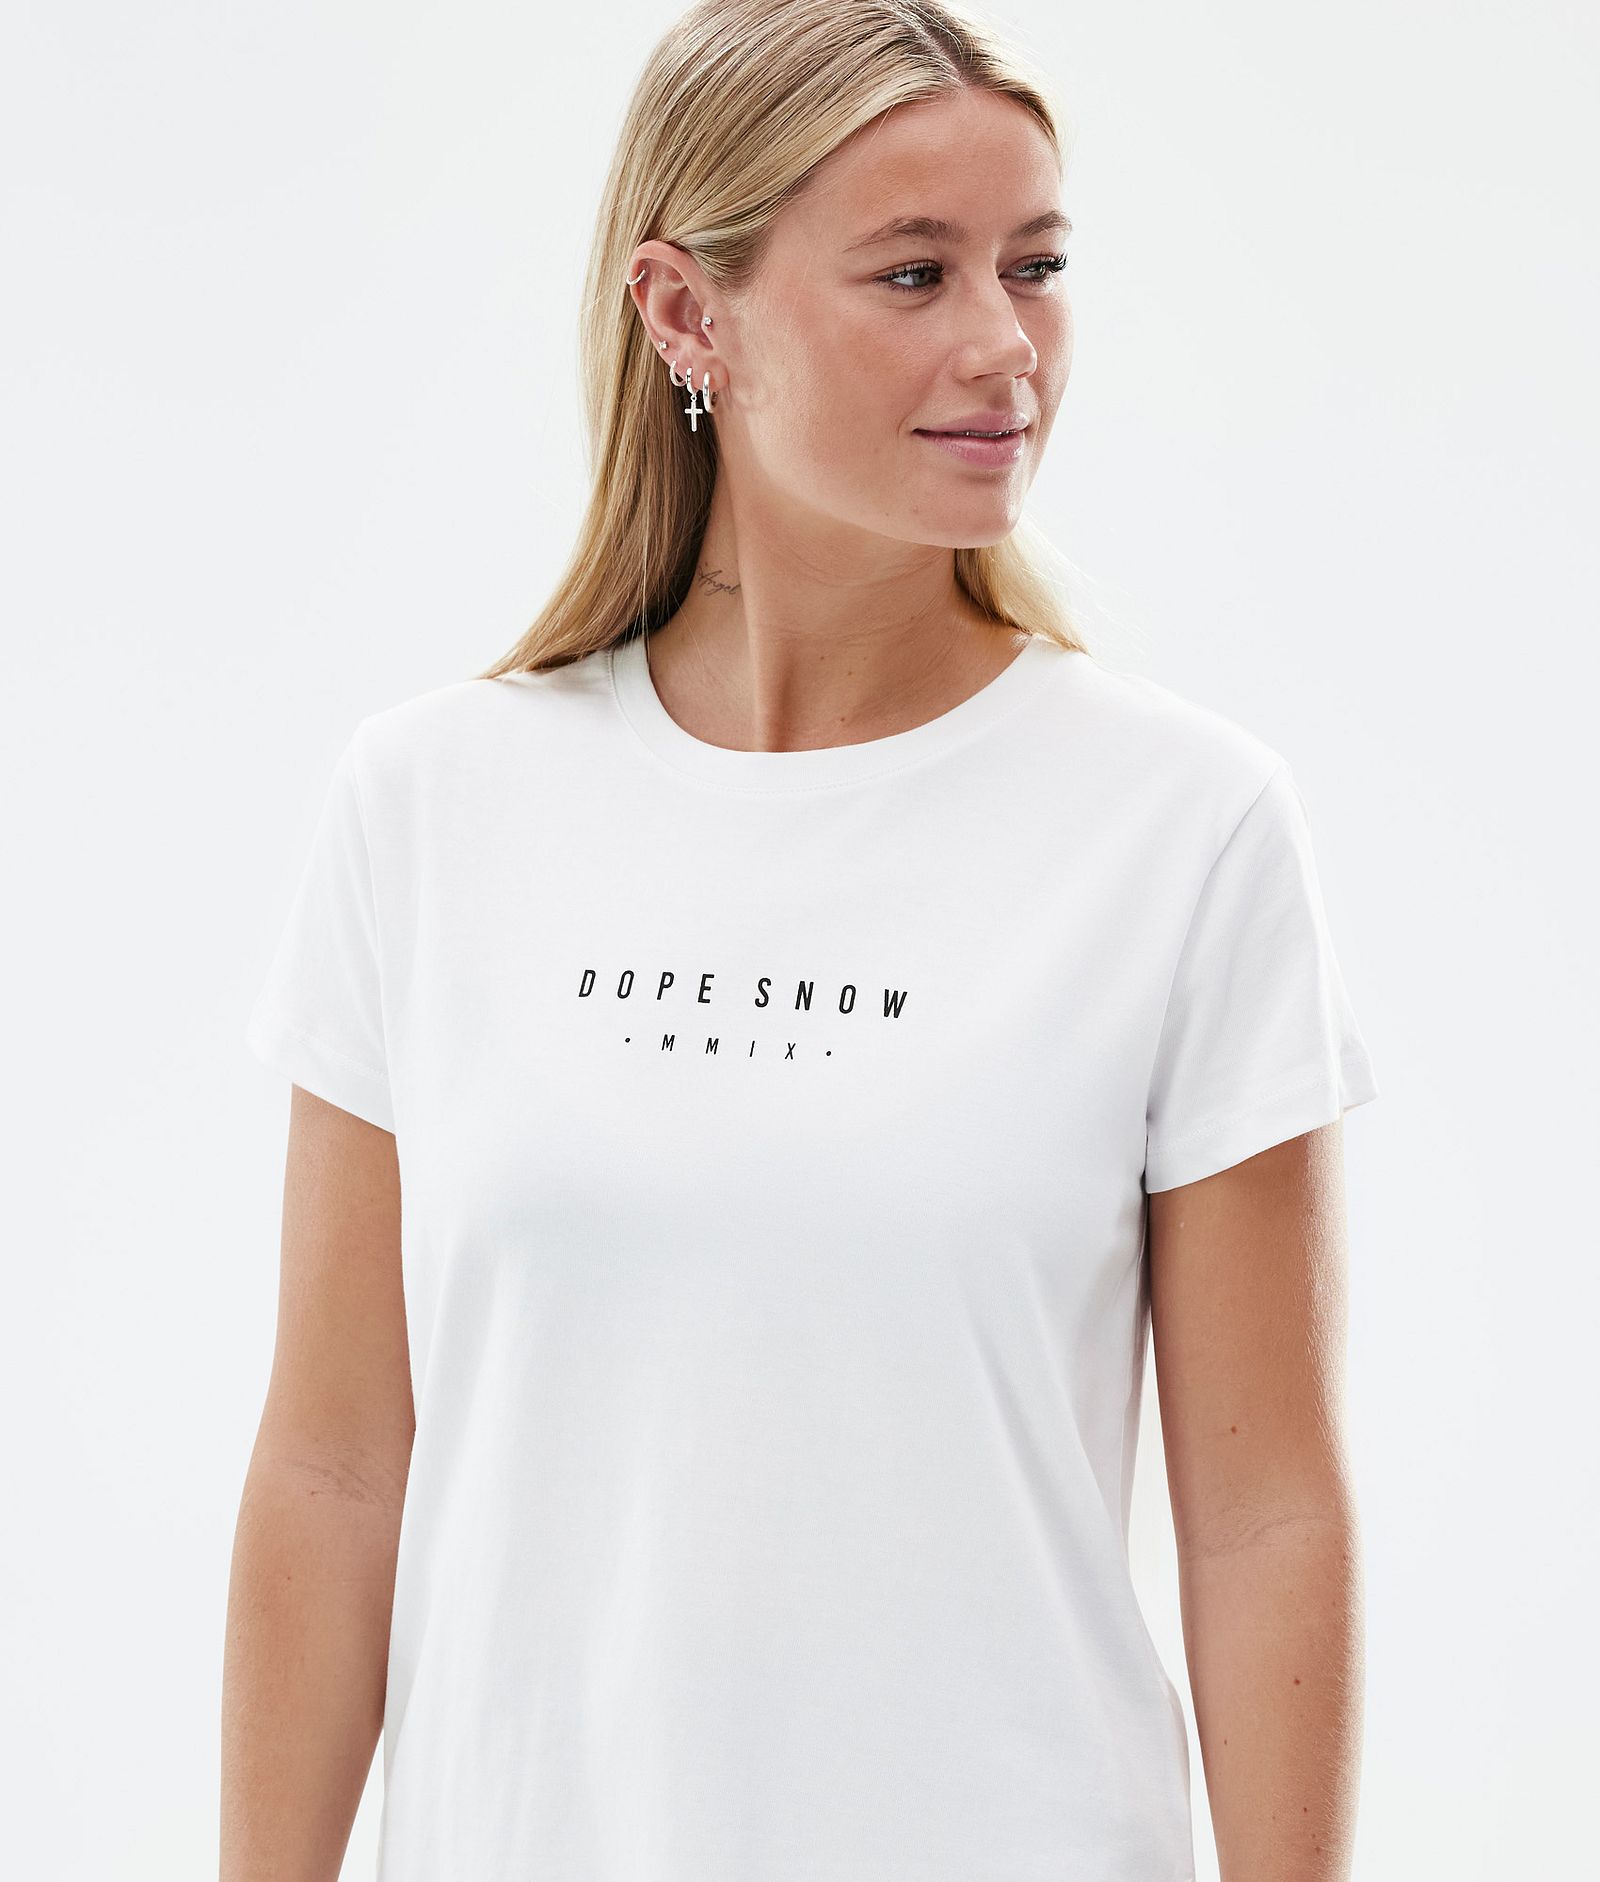 Dope Standard W T-paita Naiset Silhouette White, Kuva 3 / 6